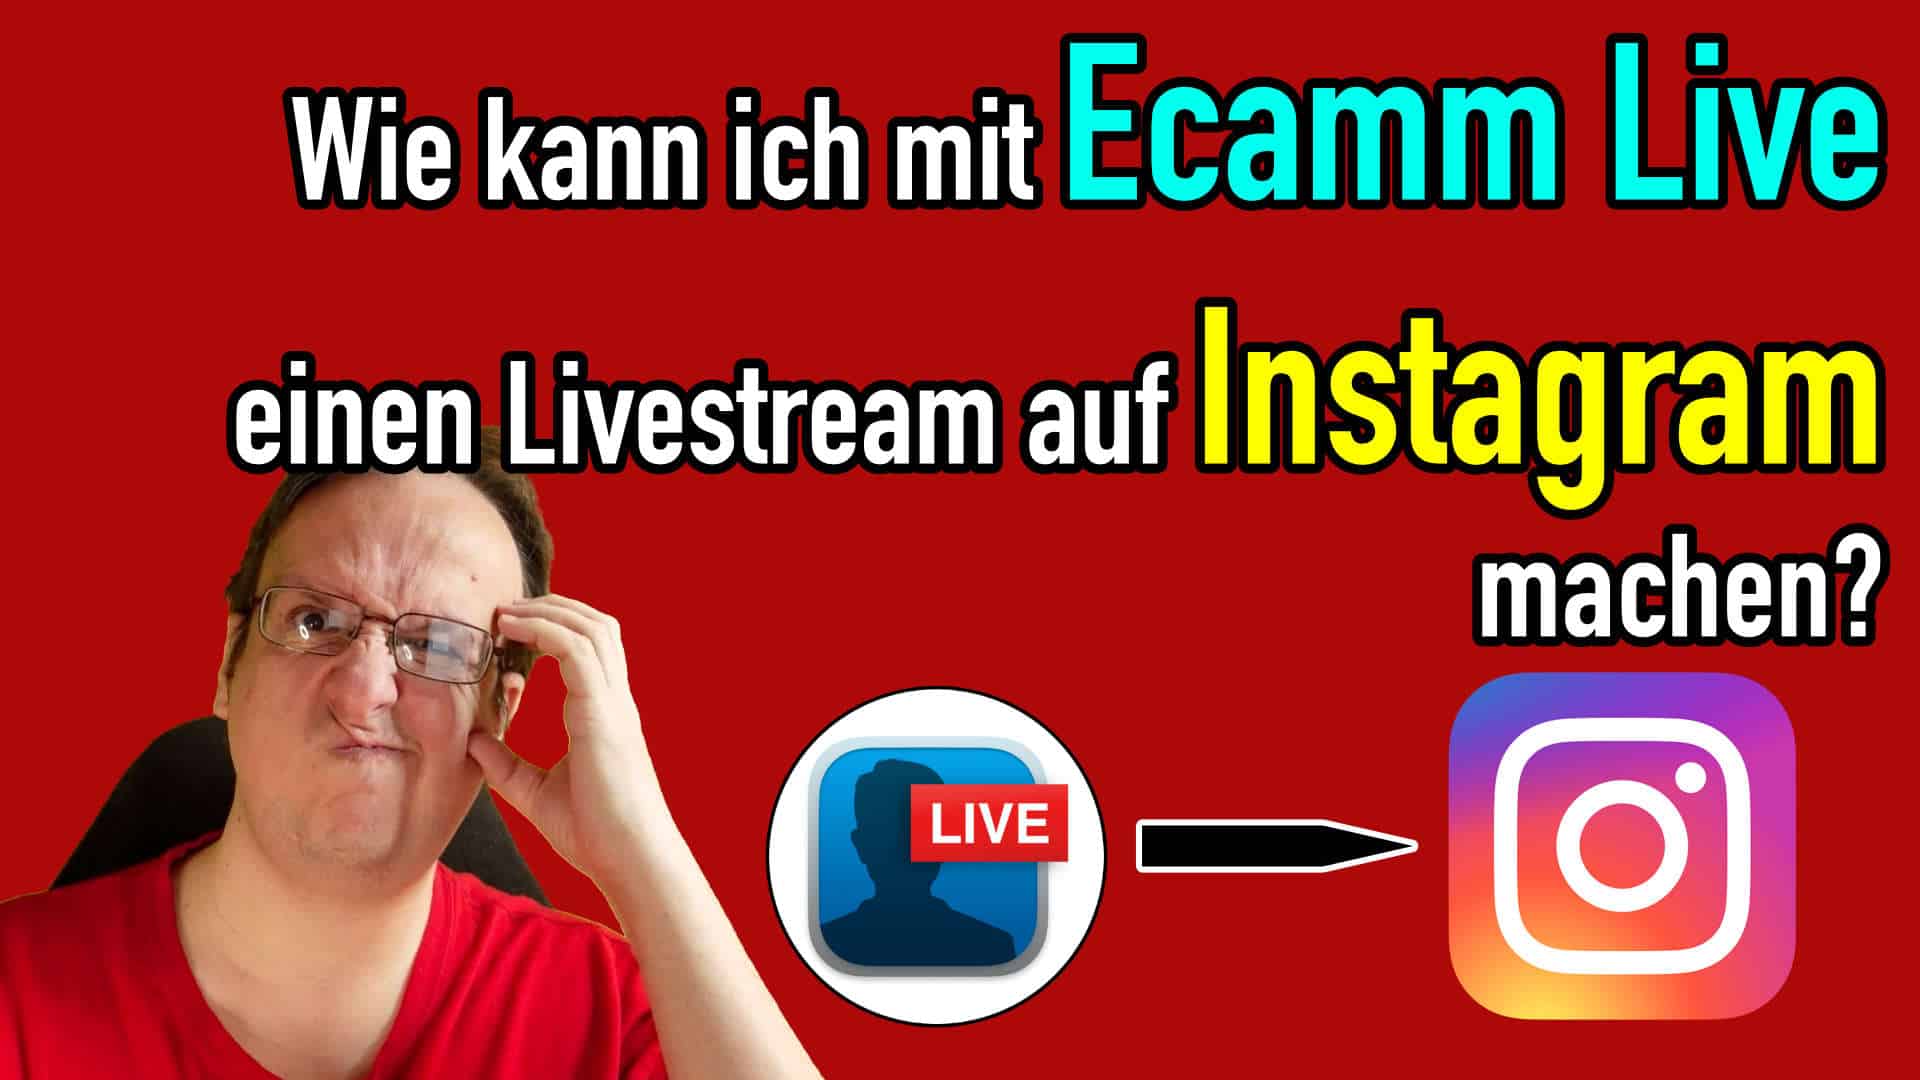 Ecamm Live: Wie kann ich einen Livestream auf Instagram machen?